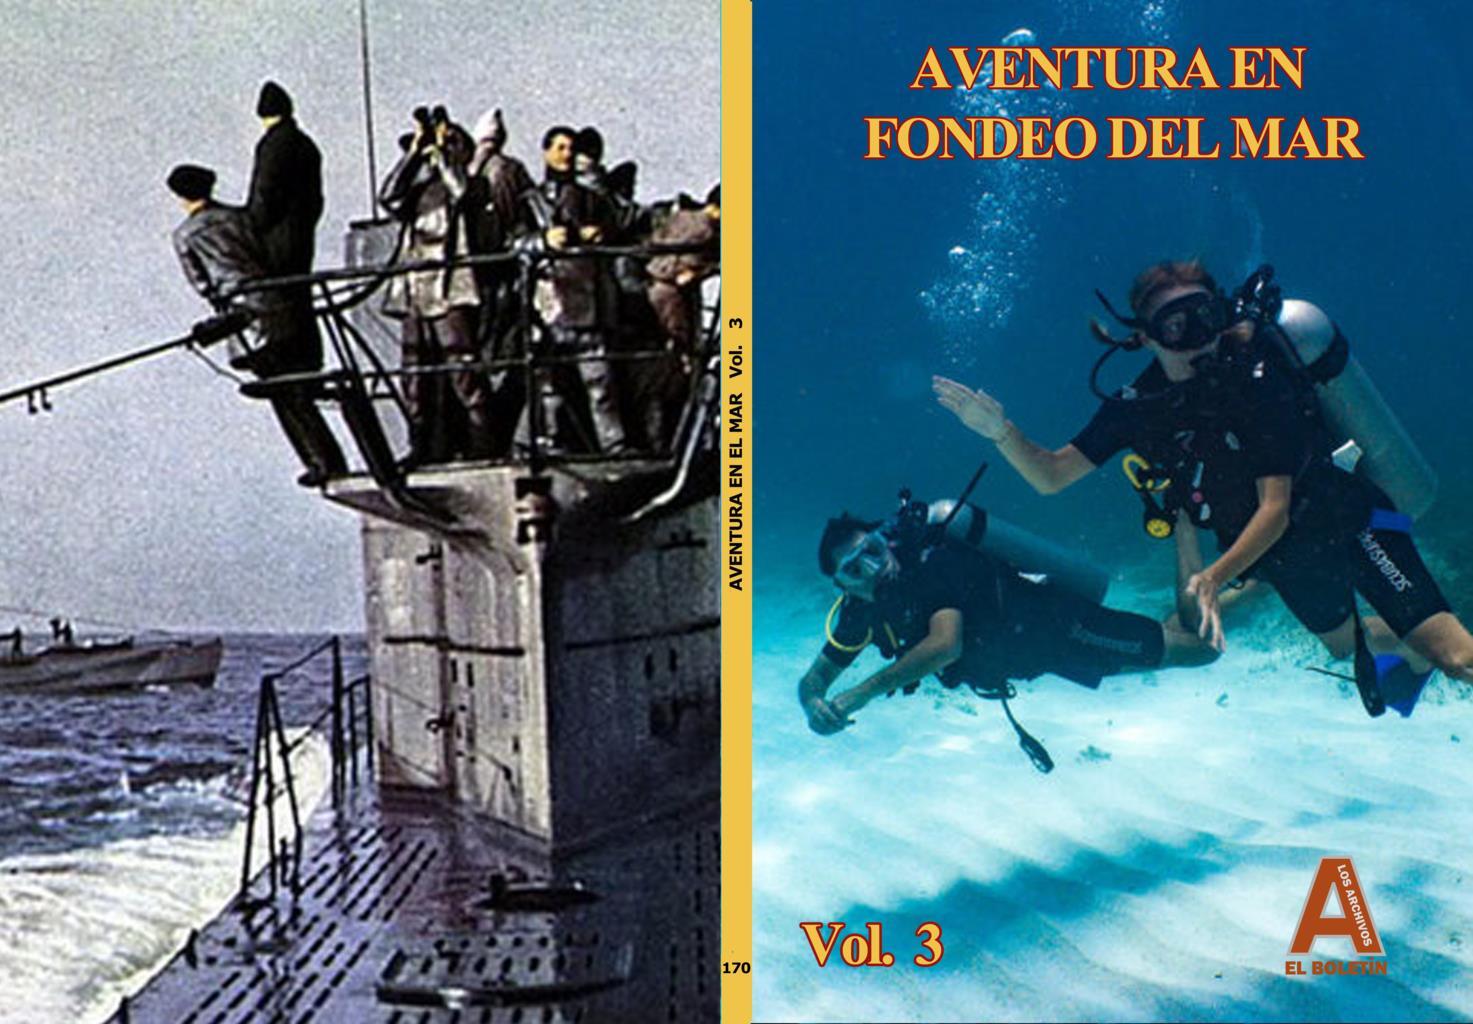 Los Archivos de El Boletin volumen 170: Aventuras en el fondo del mar vol 3